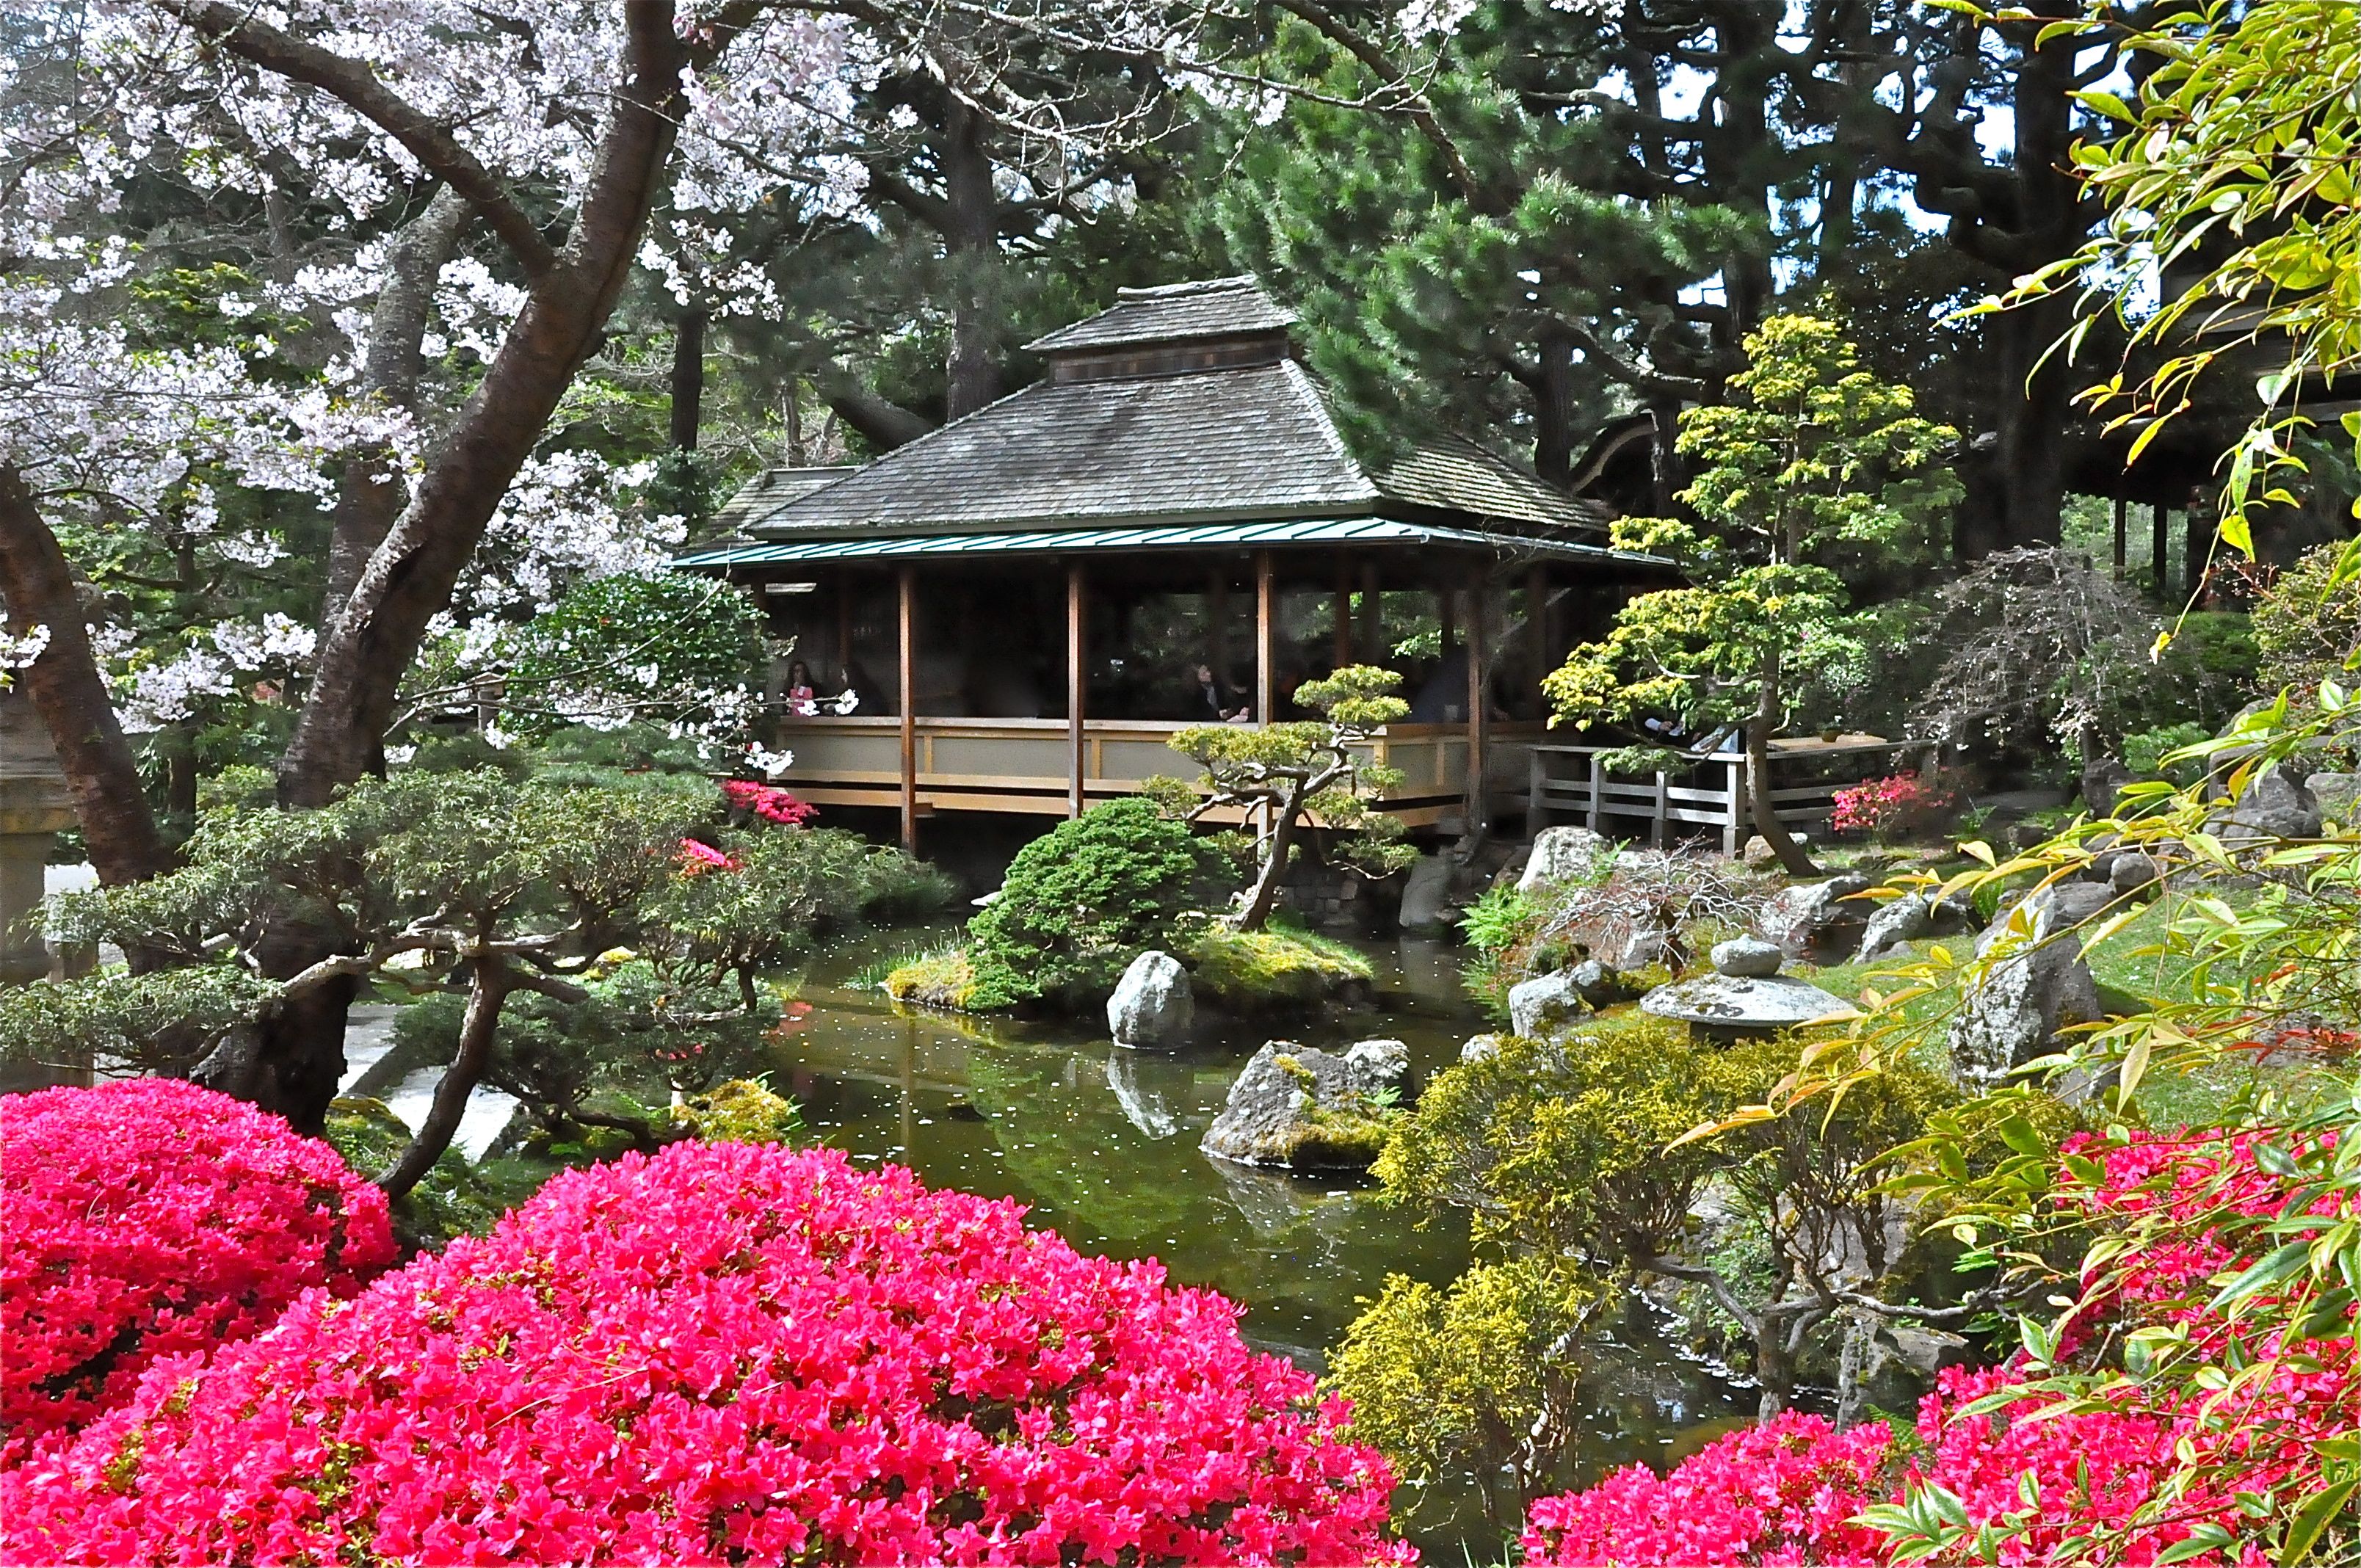 3216x2136px Japanese Tea Garden (4806.92 KB).02.2015